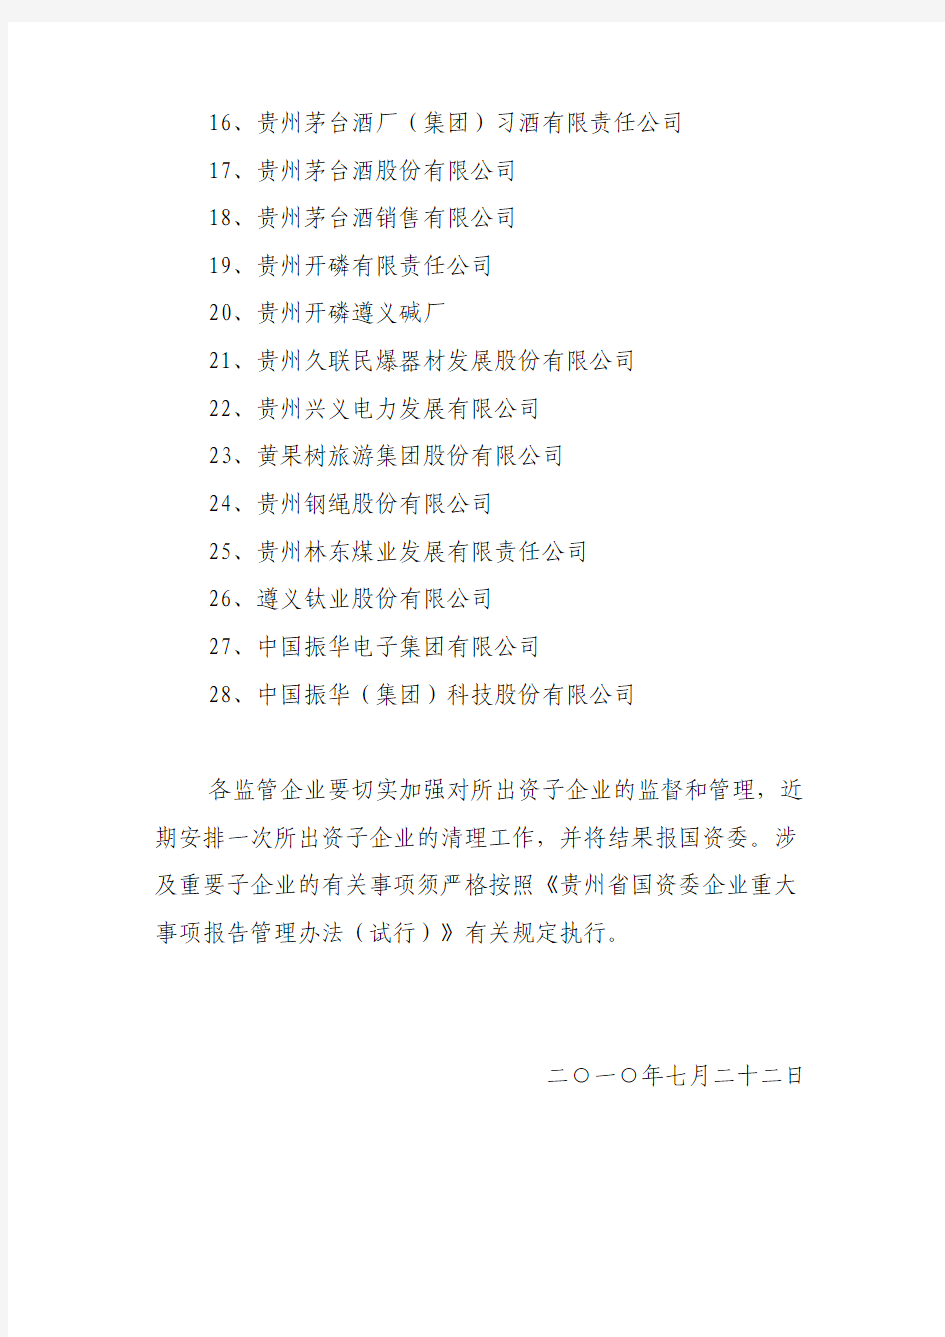 贵州省国资委监管企业所属重要子企业名单